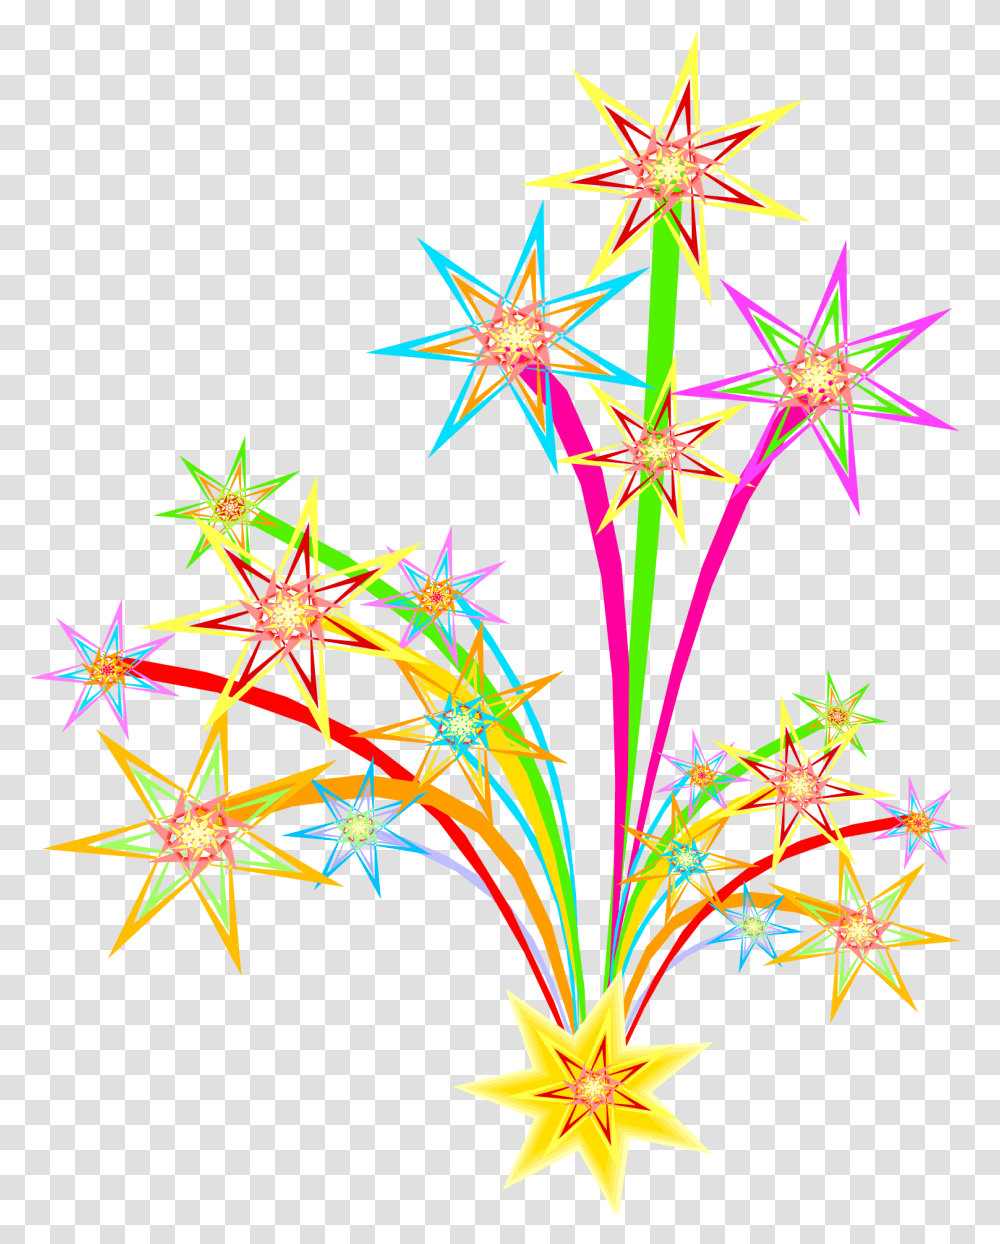 Background Fireworks Clipart, Ornament, Pattern, Fractal, Lighting Transparent Png